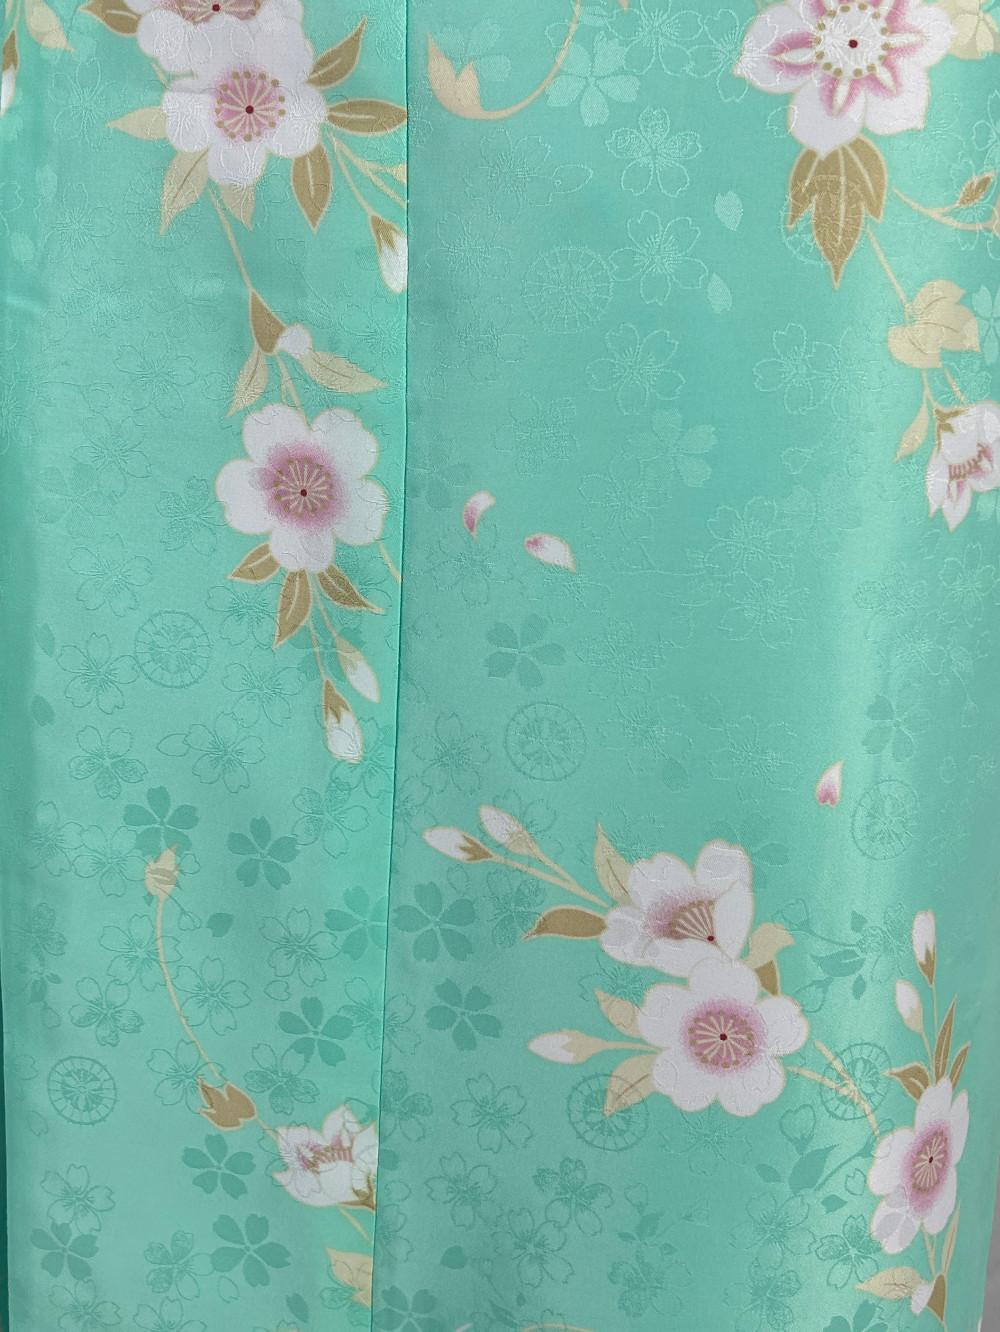 衿つき着物(リボン帯付き) [凛 薄緑] ※着物単品 ¥12,000画像